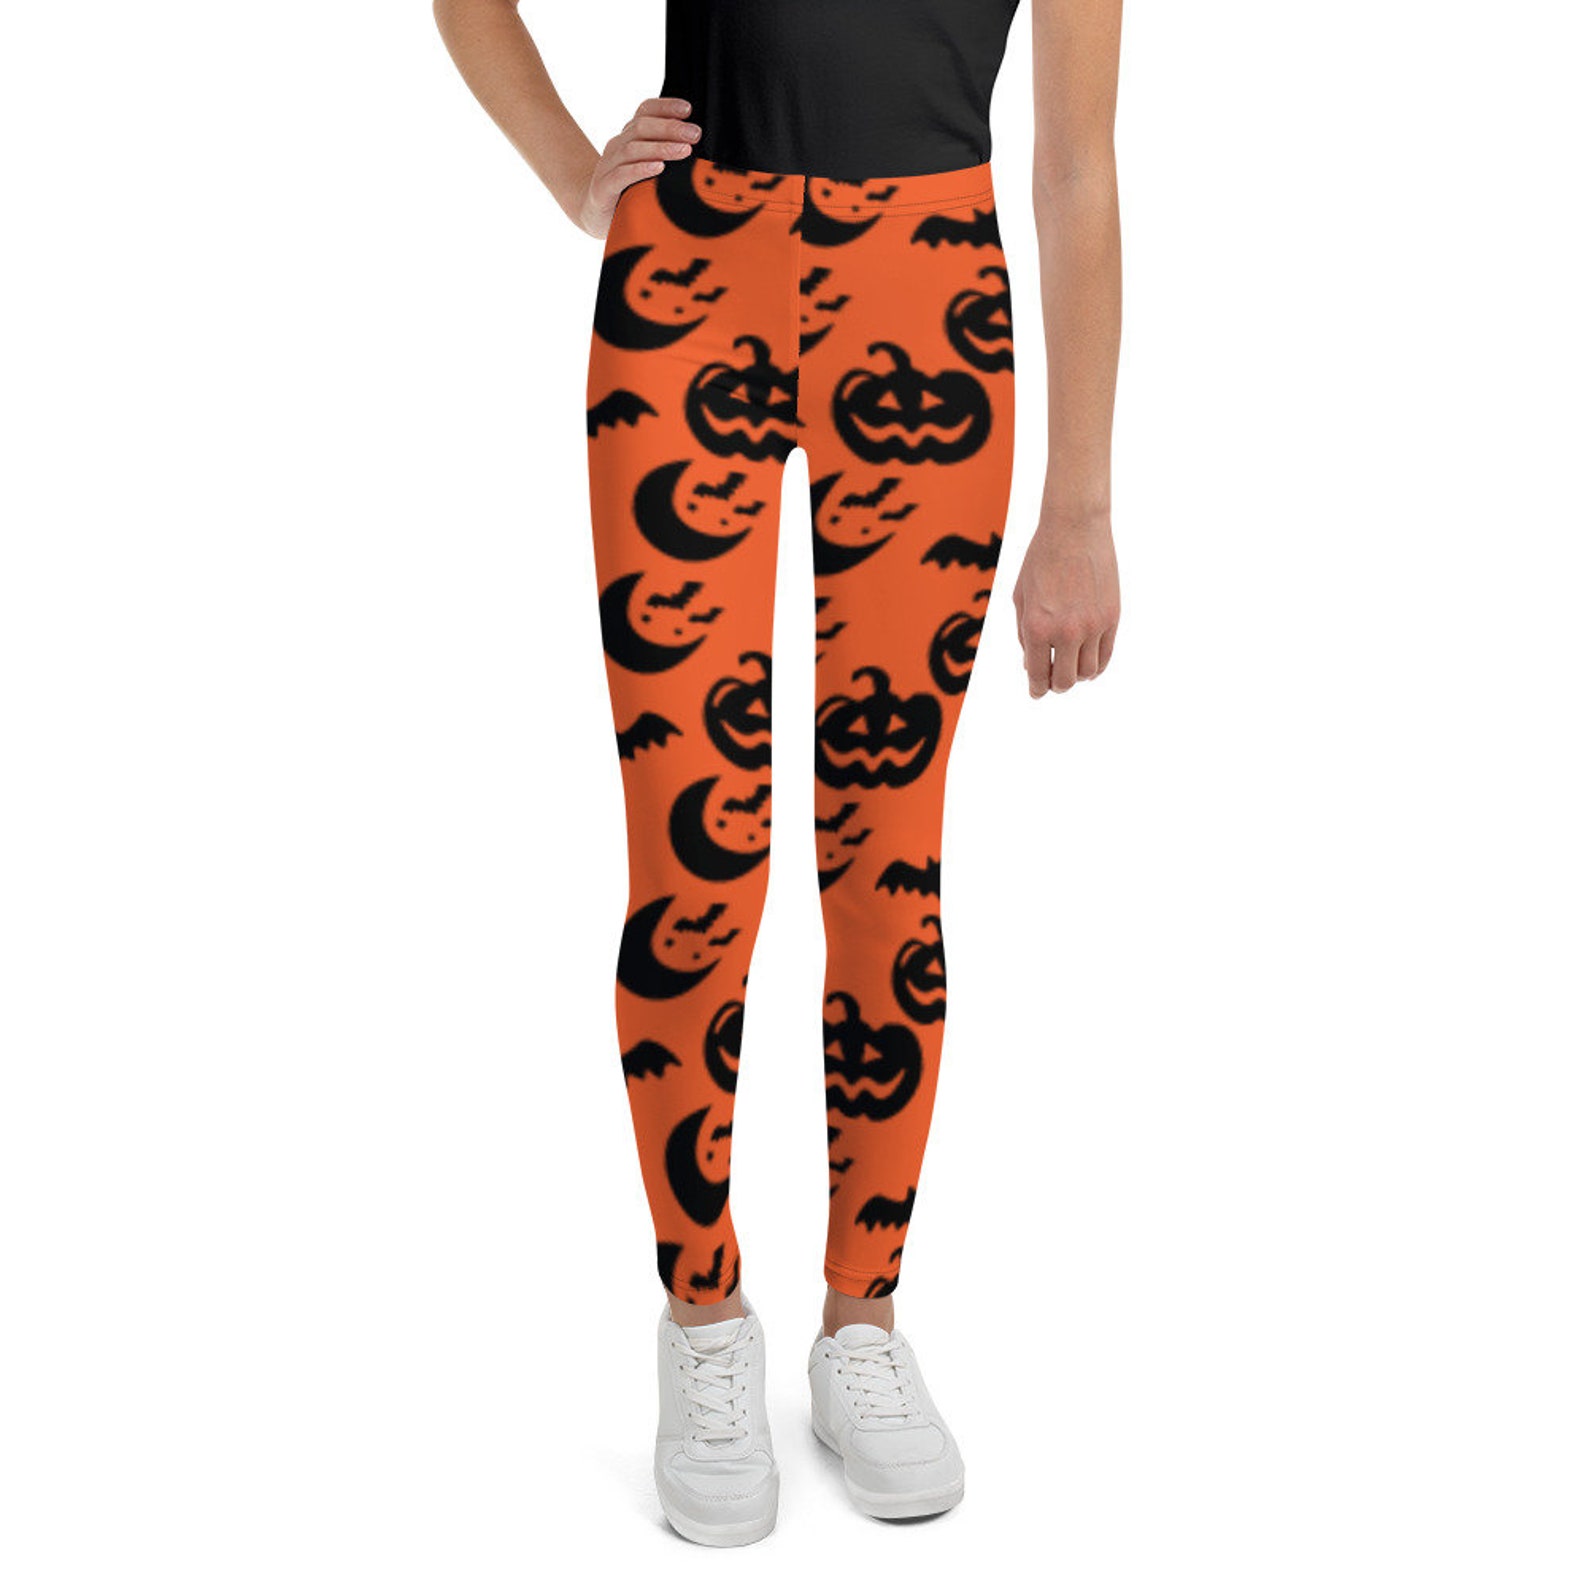 Halloween leggings for girls halloween leggings for kids | Etsy